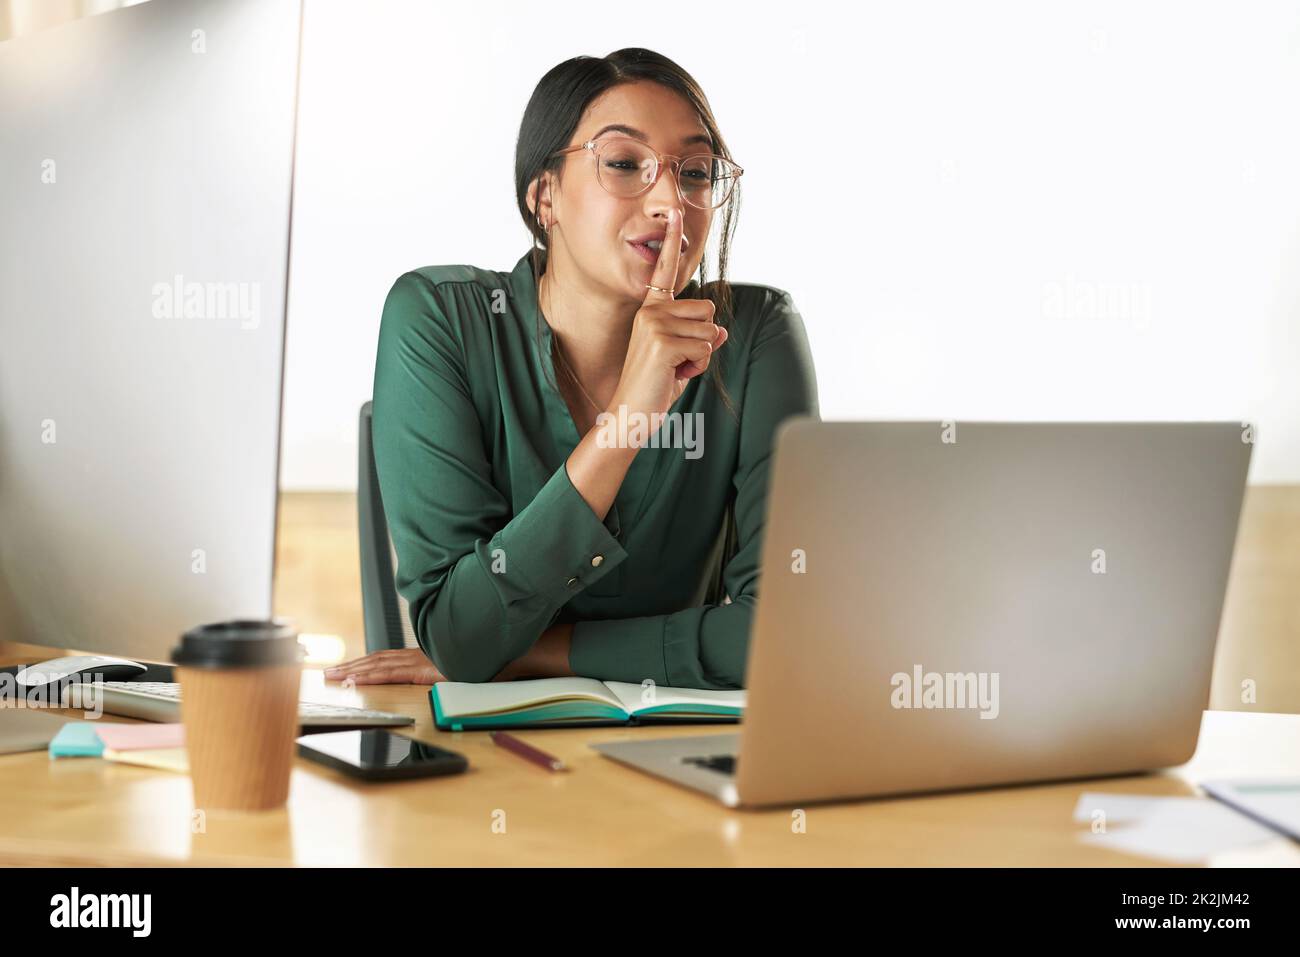 Guarde esa información a usted mismo. Fotografía de una joven empresaria que utiliza su ordenador portátil para organizar una videoconferencia en el trabajo. Foto de stock